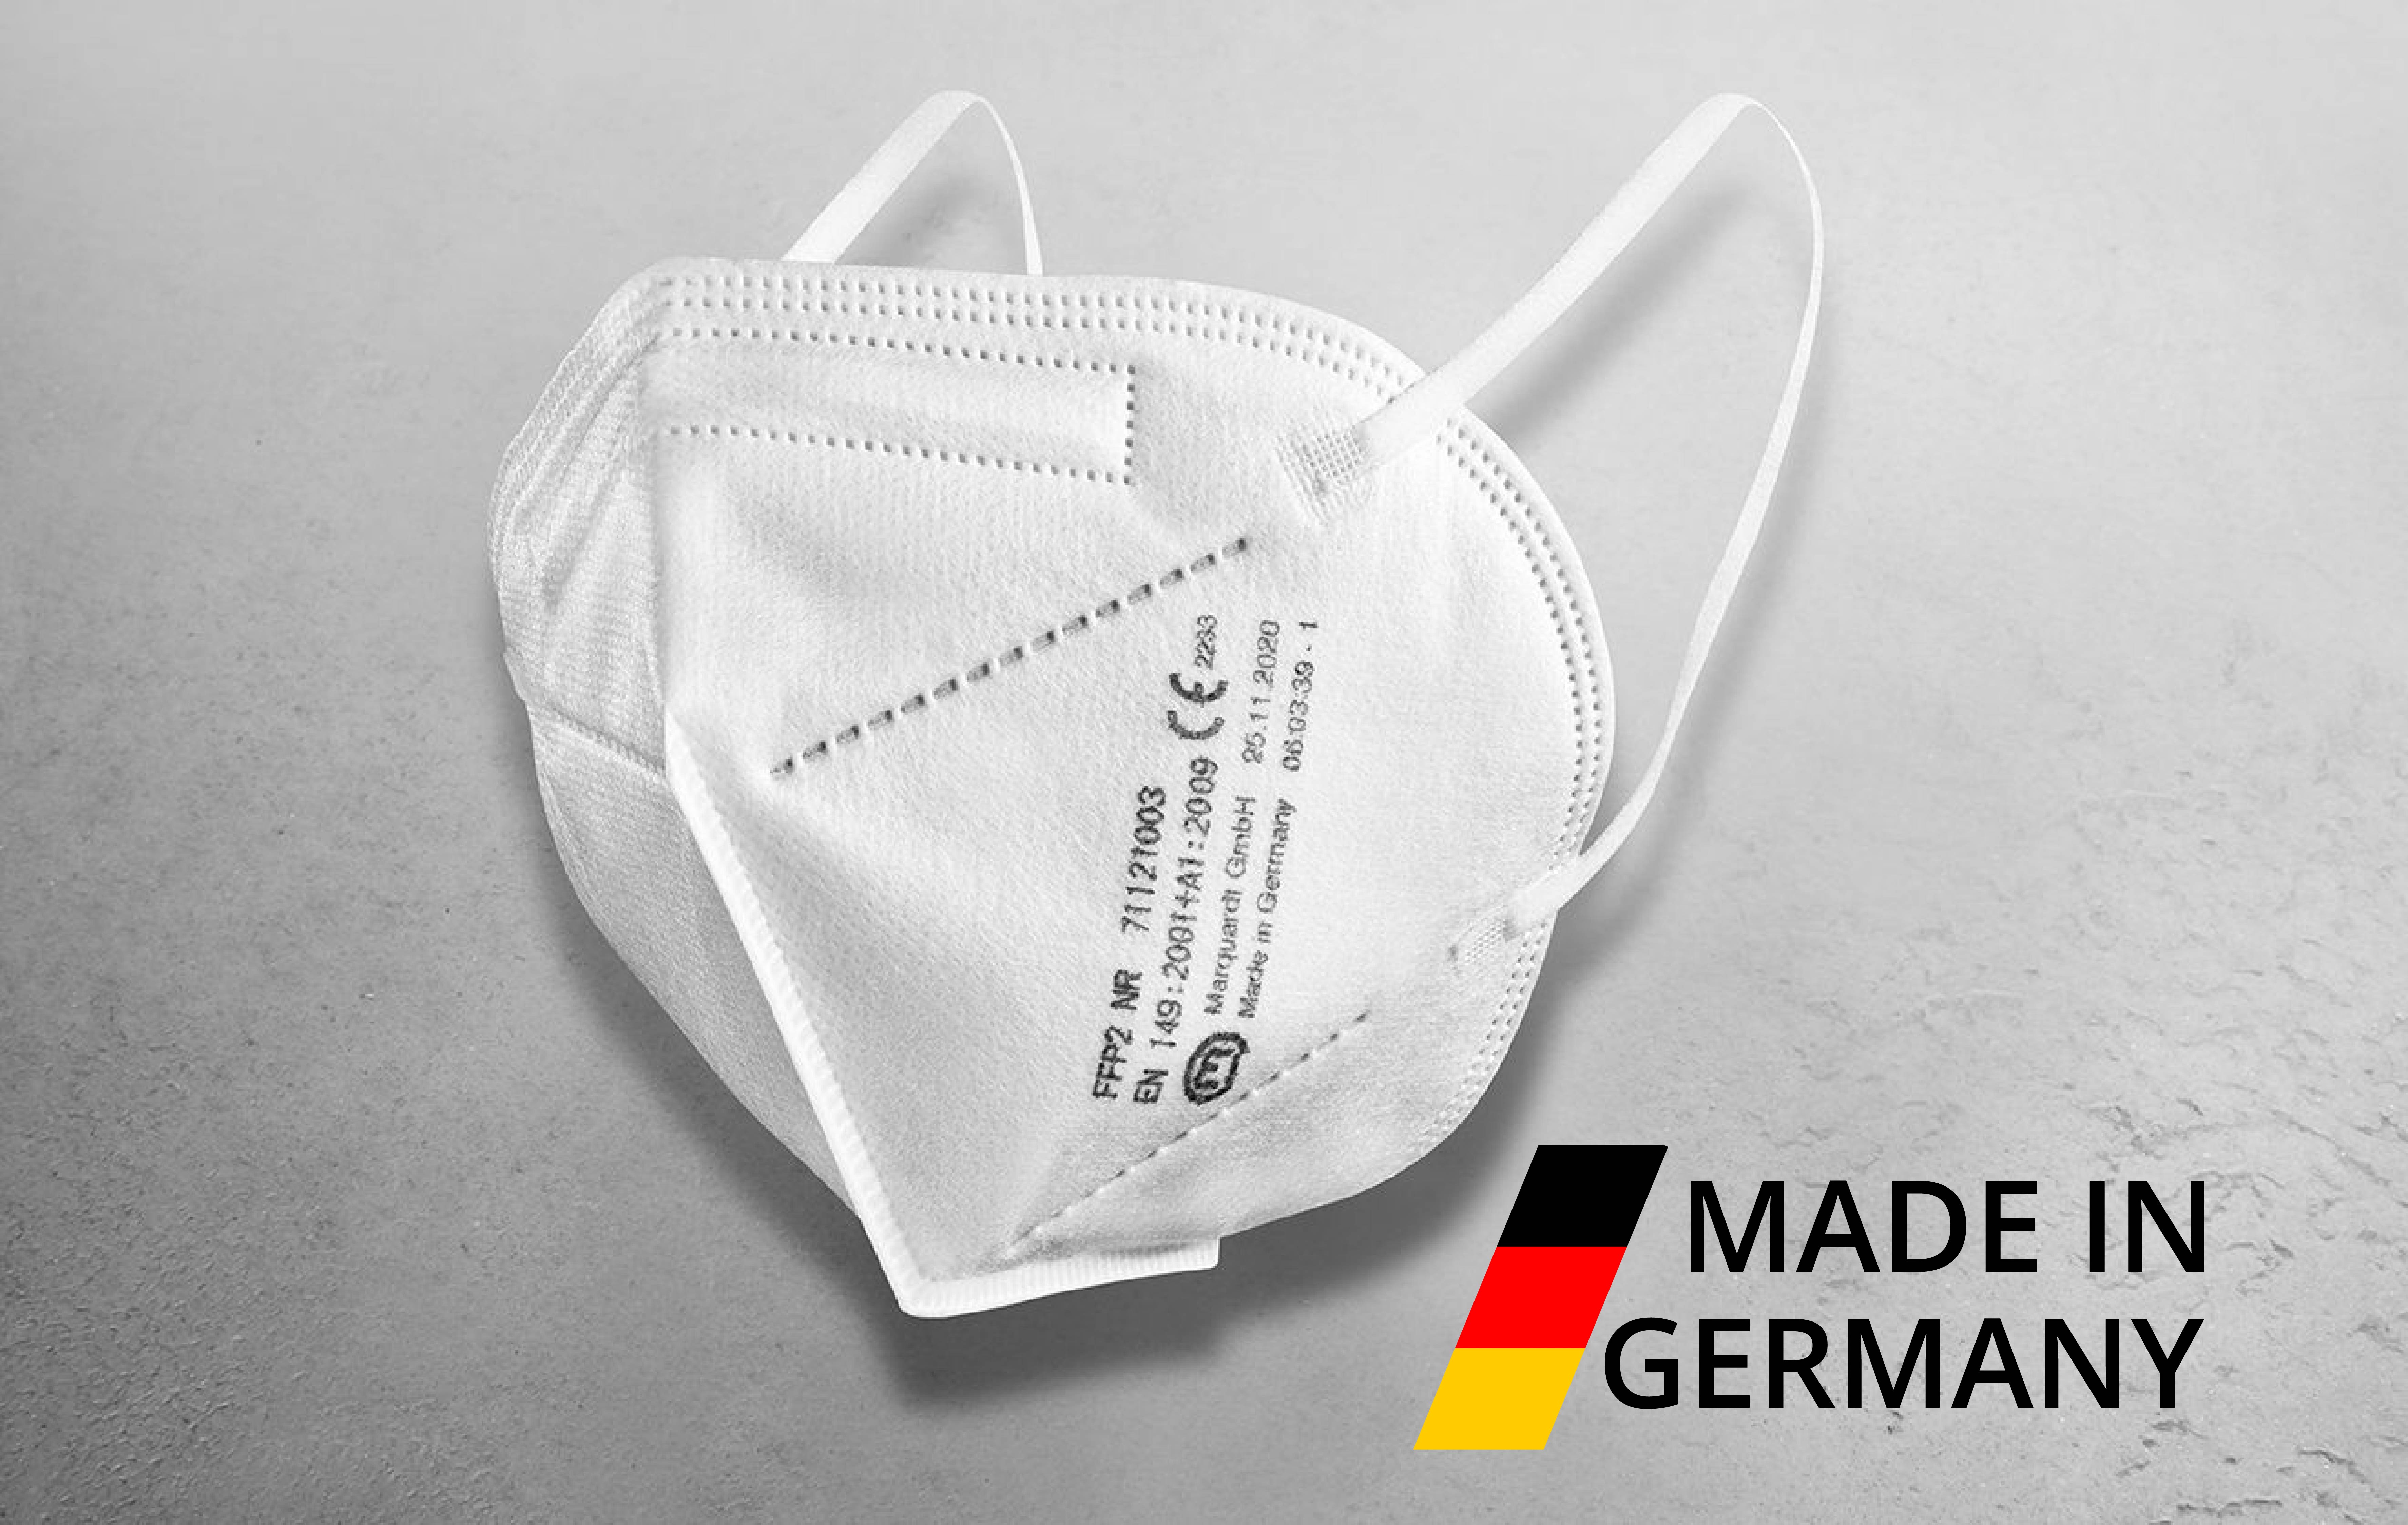 Marquardt FFP2 Mundschutz-Masken - Made in Germany, 20 Stück, einzeln unterverpackt